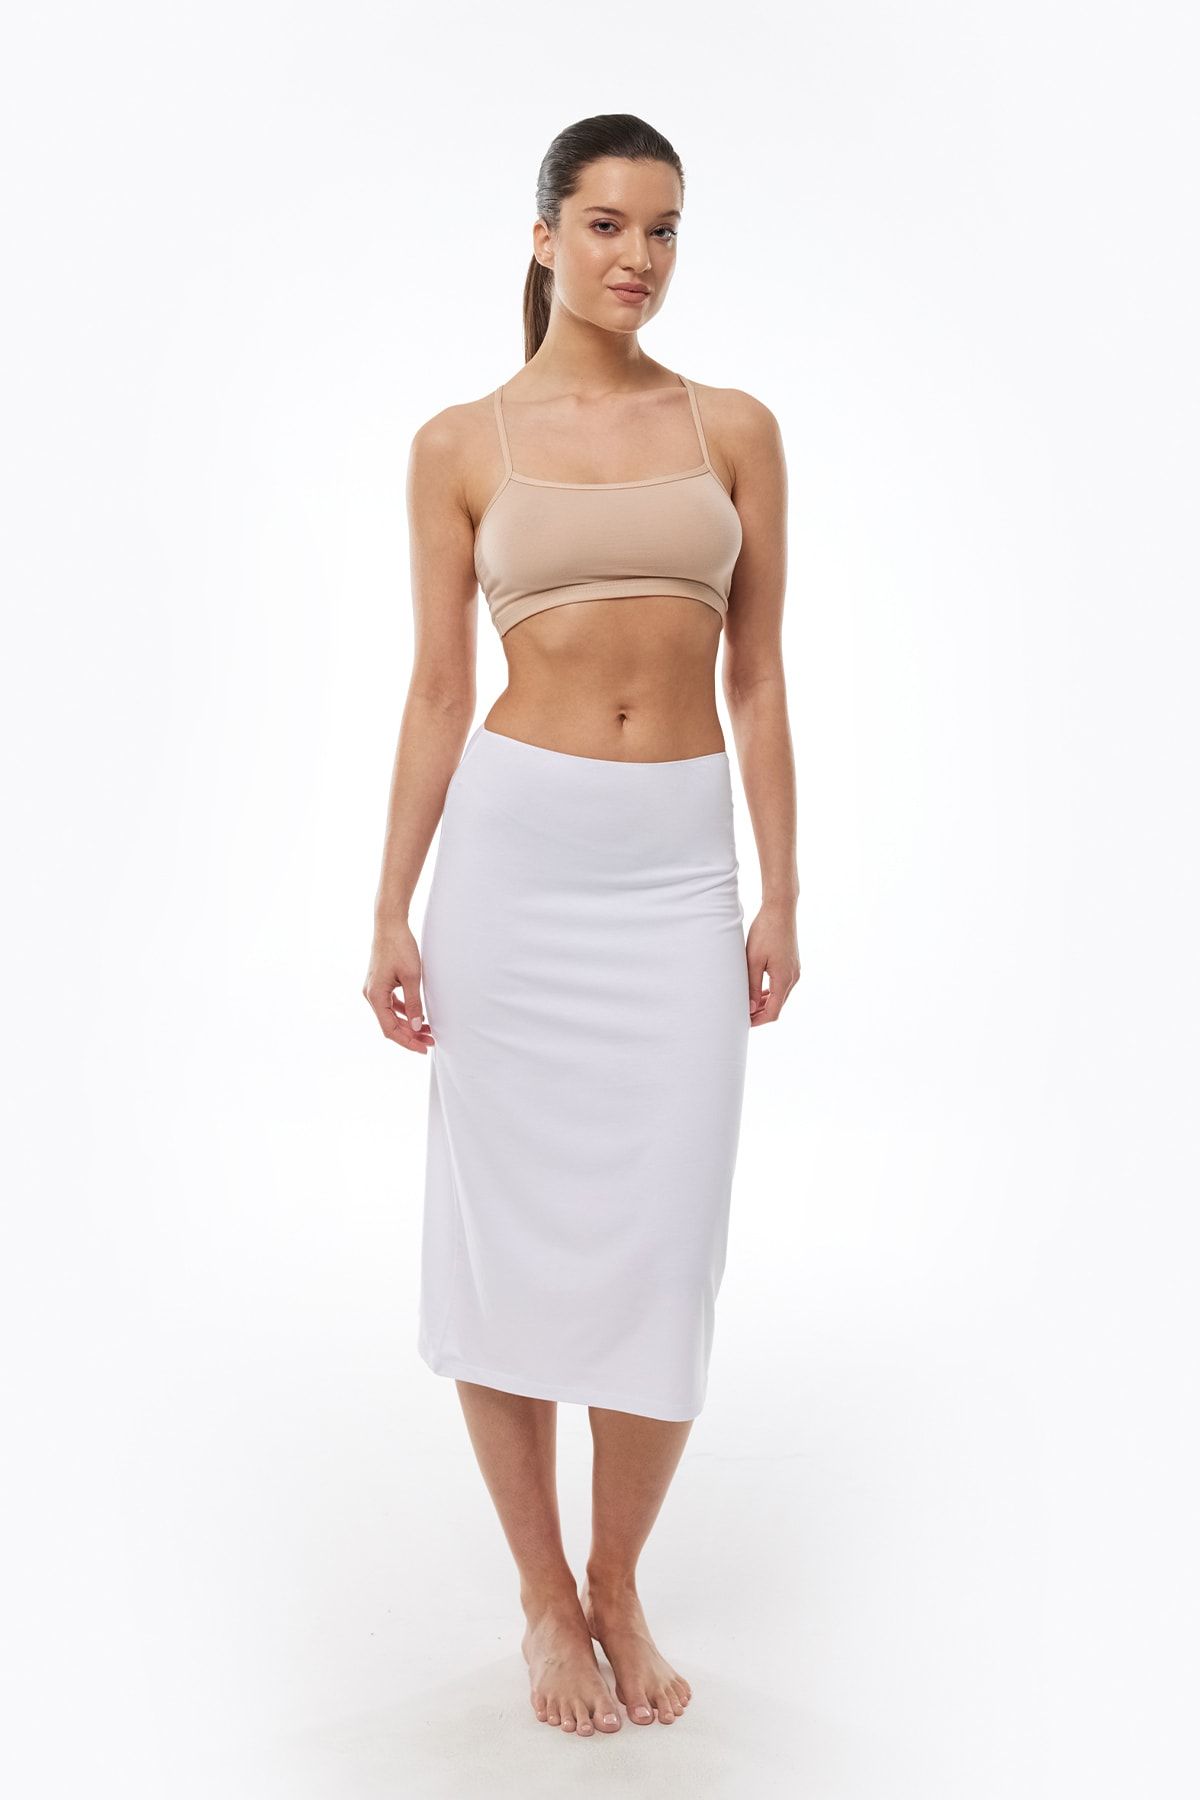 Malabadi Kadın Beyaz Rengi Tam Boy Uzun Etek Astarı Modal Jüpon 1061